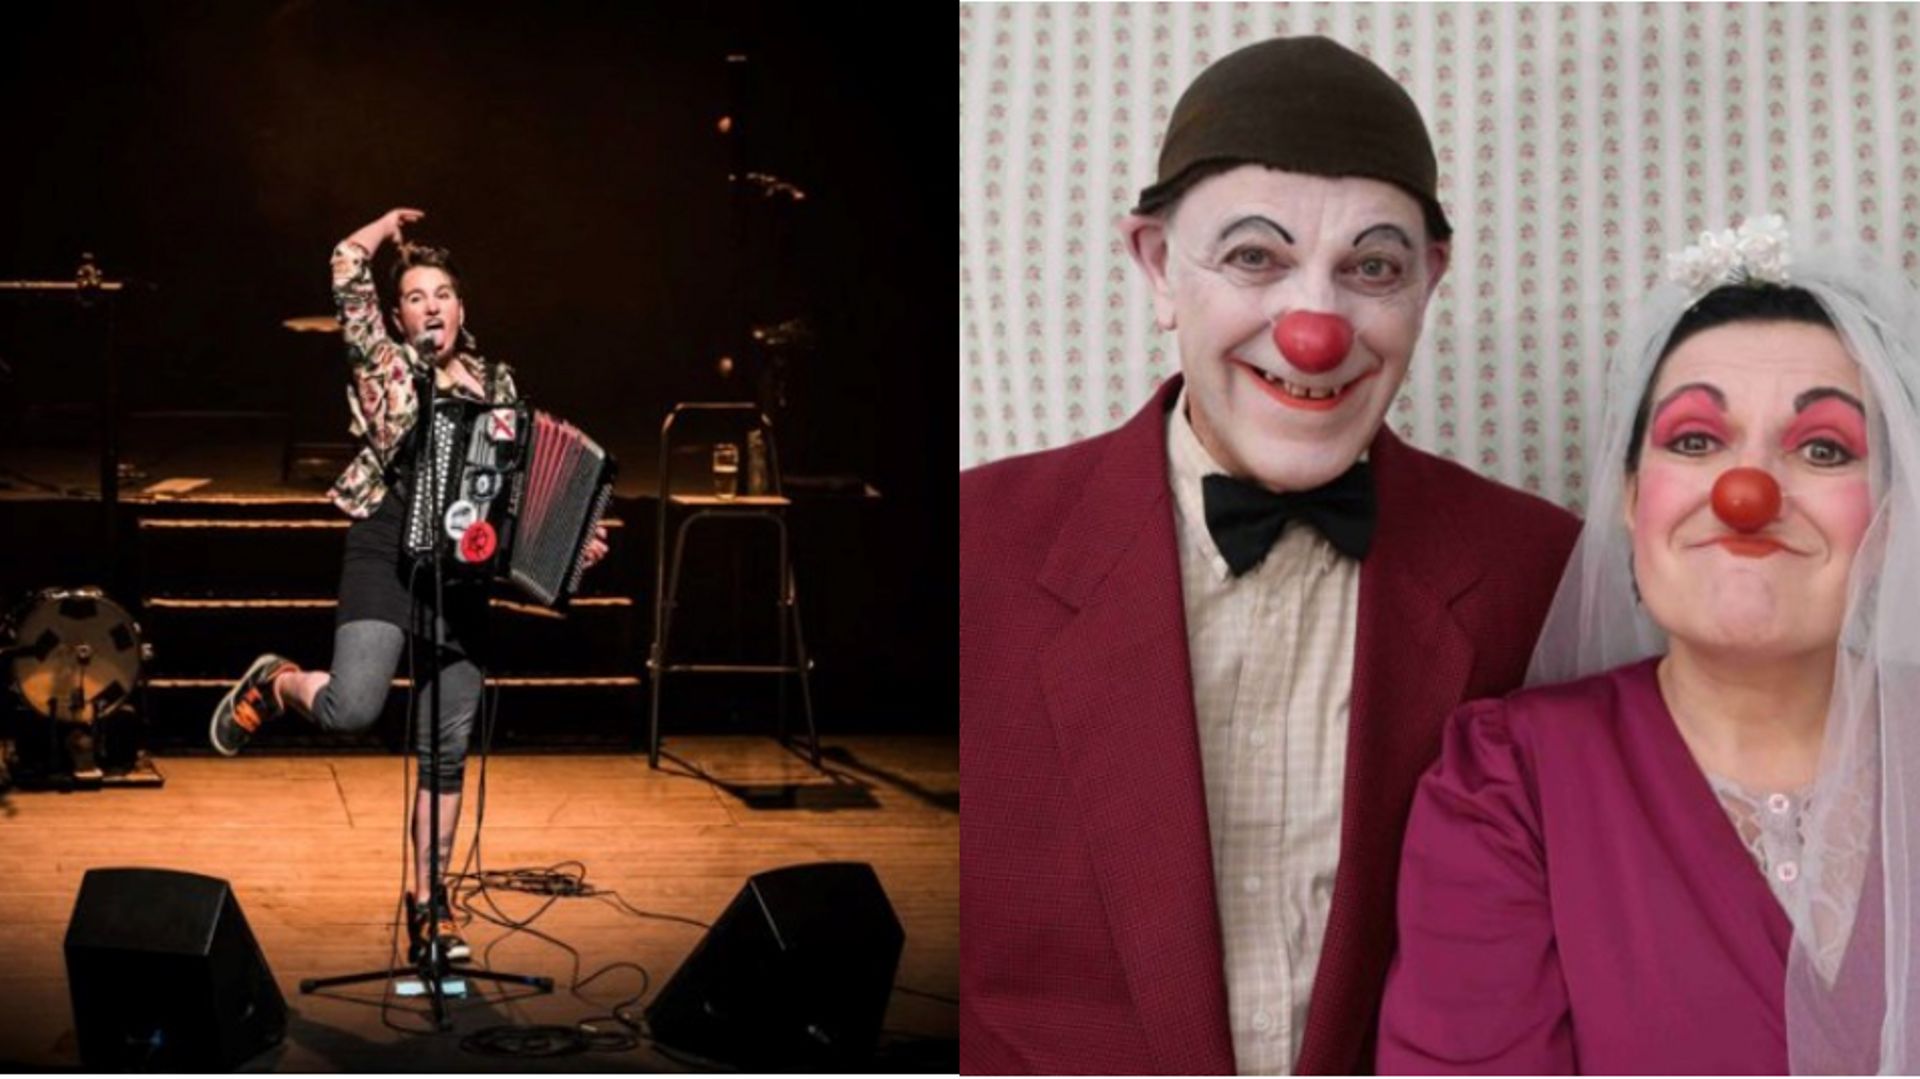 Concert, spectacle de clowns : le programme sera varié ce week-end au BUFF’estival